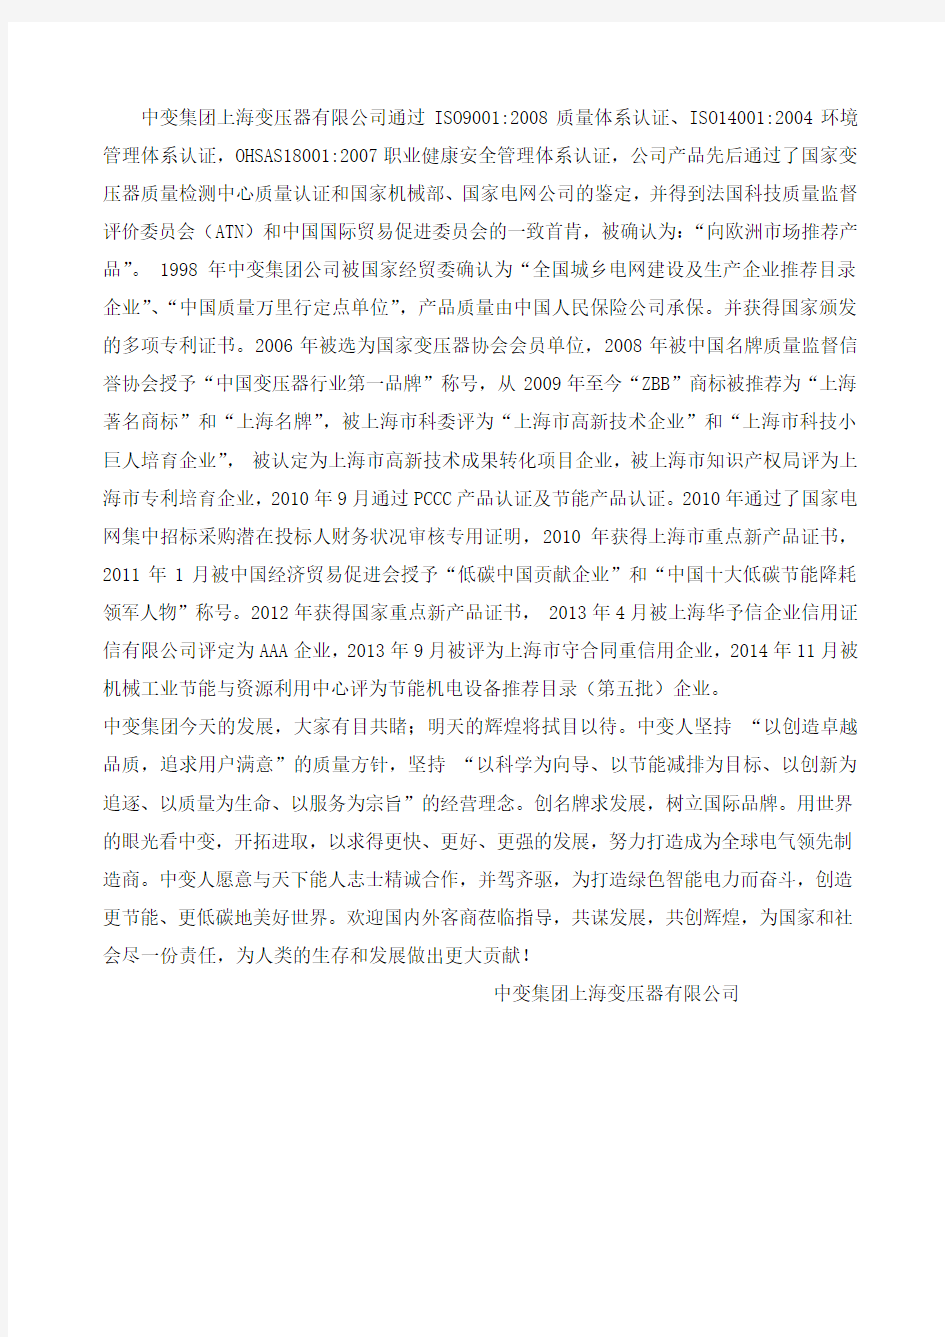 中变集团上海变压器有限公司公司简介(中英文对照)